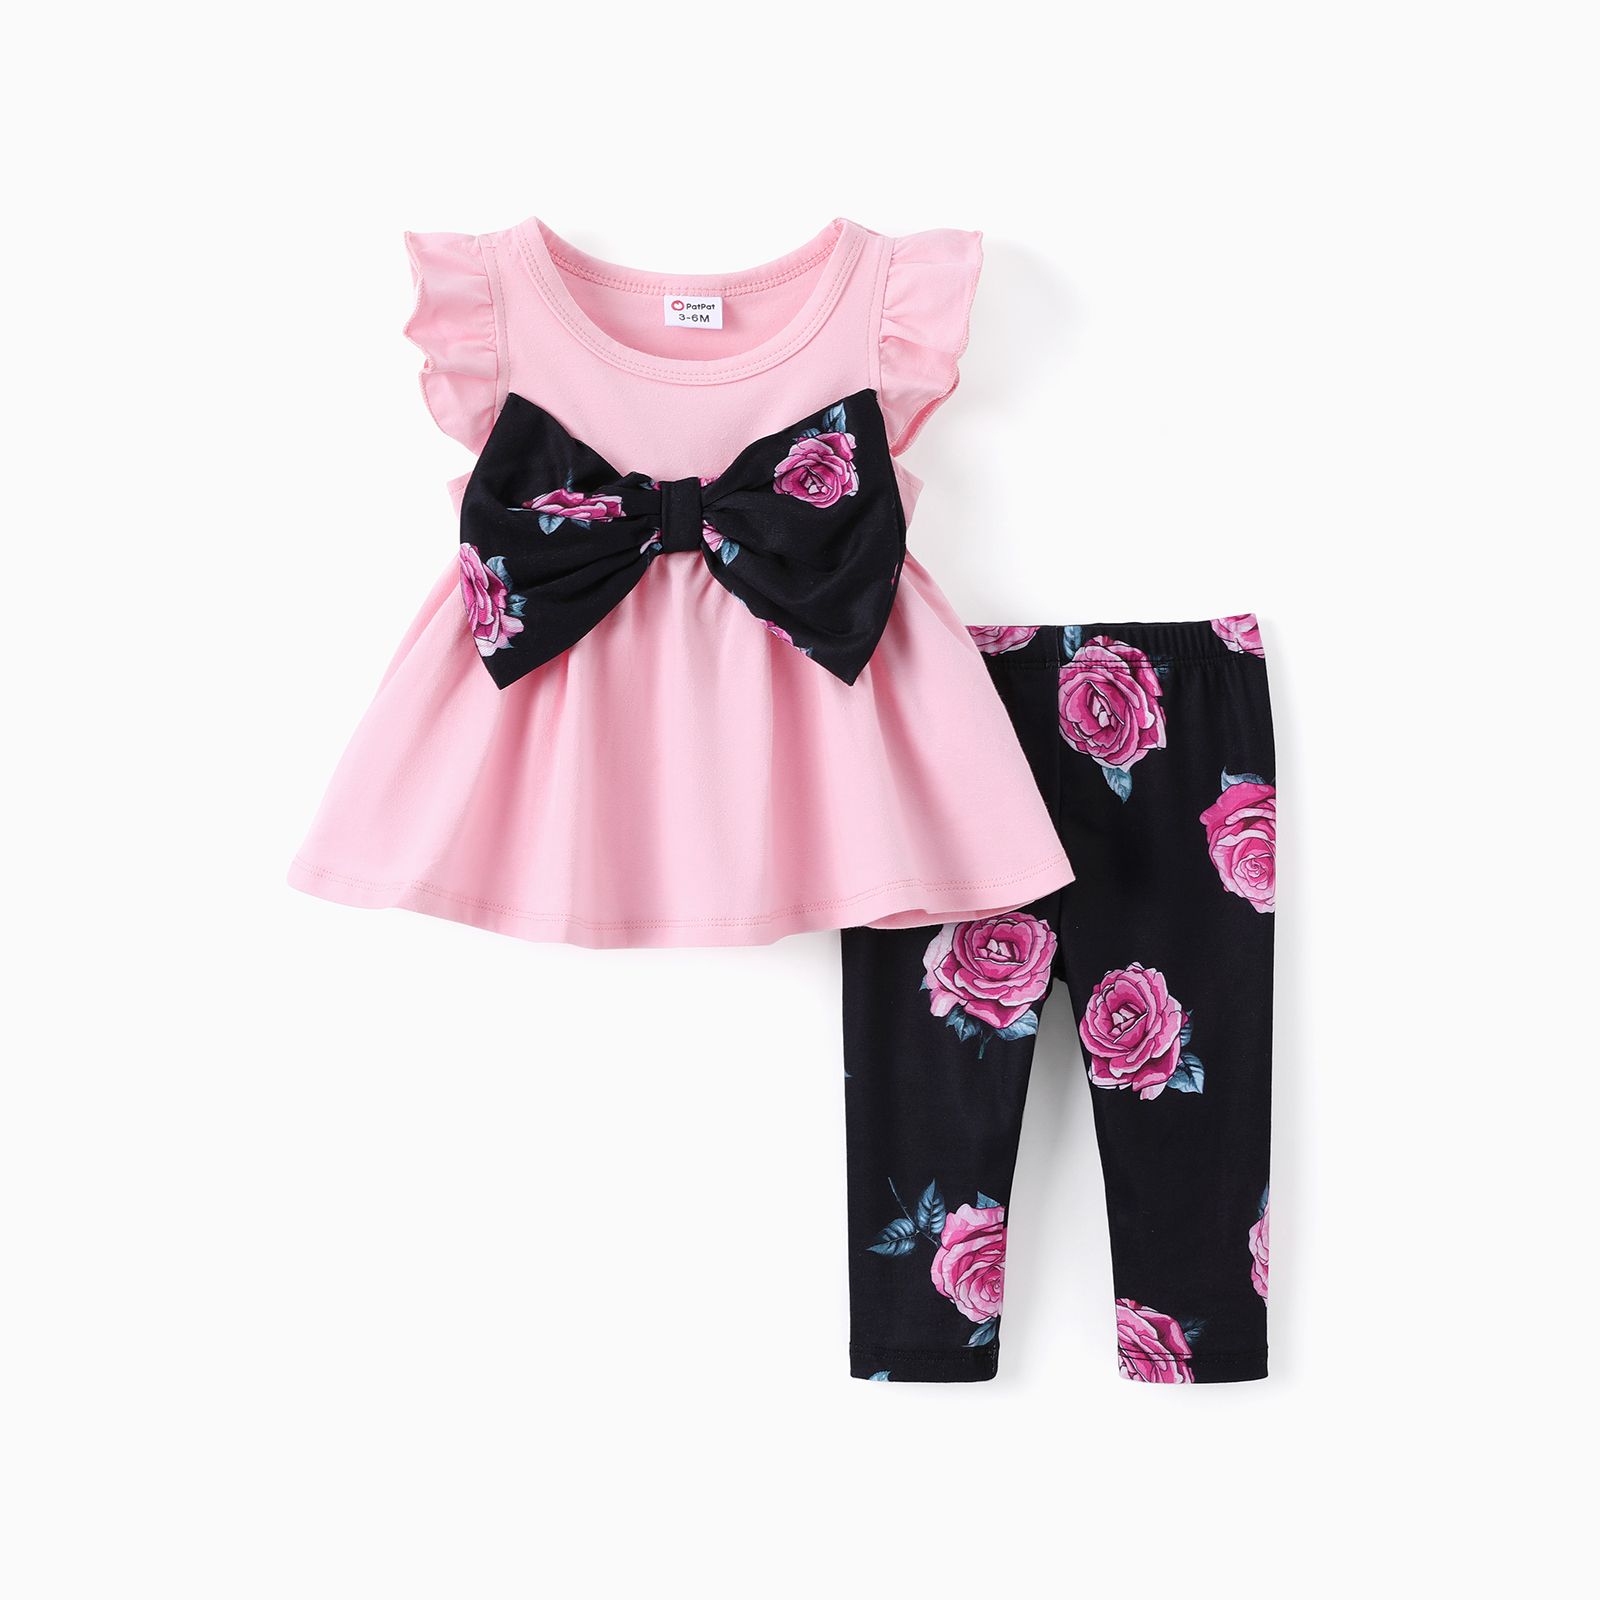 2pcs Baby Girl Ruffle Bowknot Short-sleeve Top and Polka Dots Shorts Set